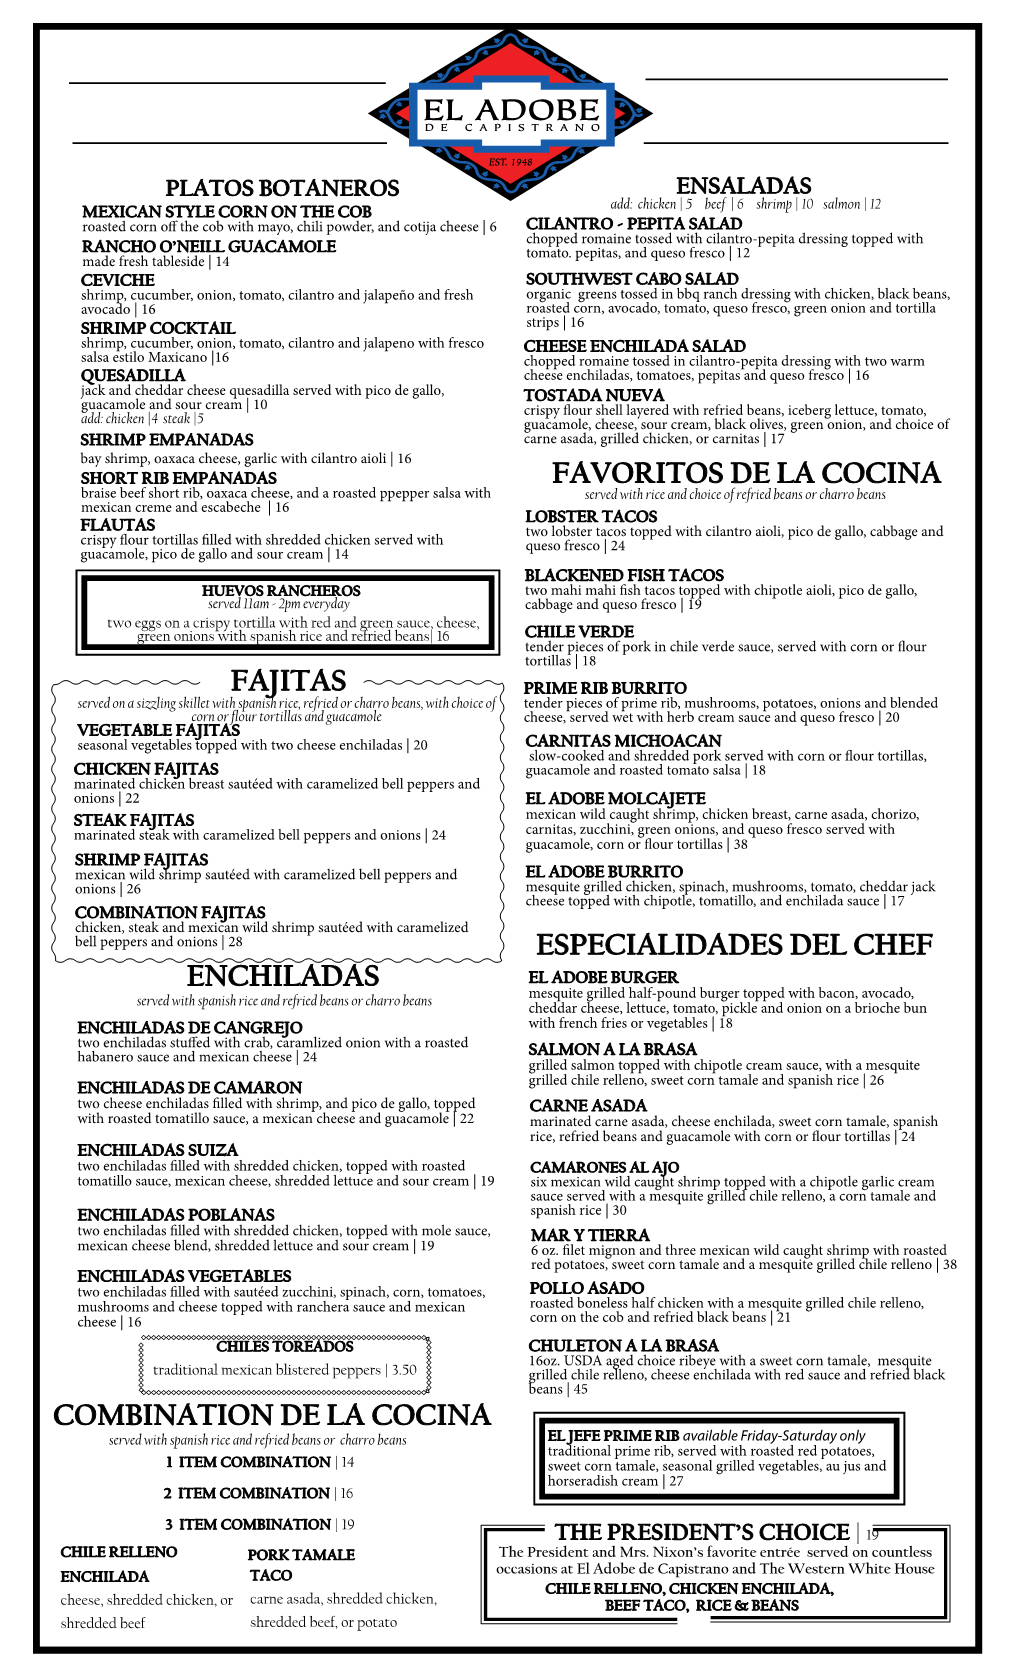 Fajitas Favoritos De La Cocina Enchiladas Combination De